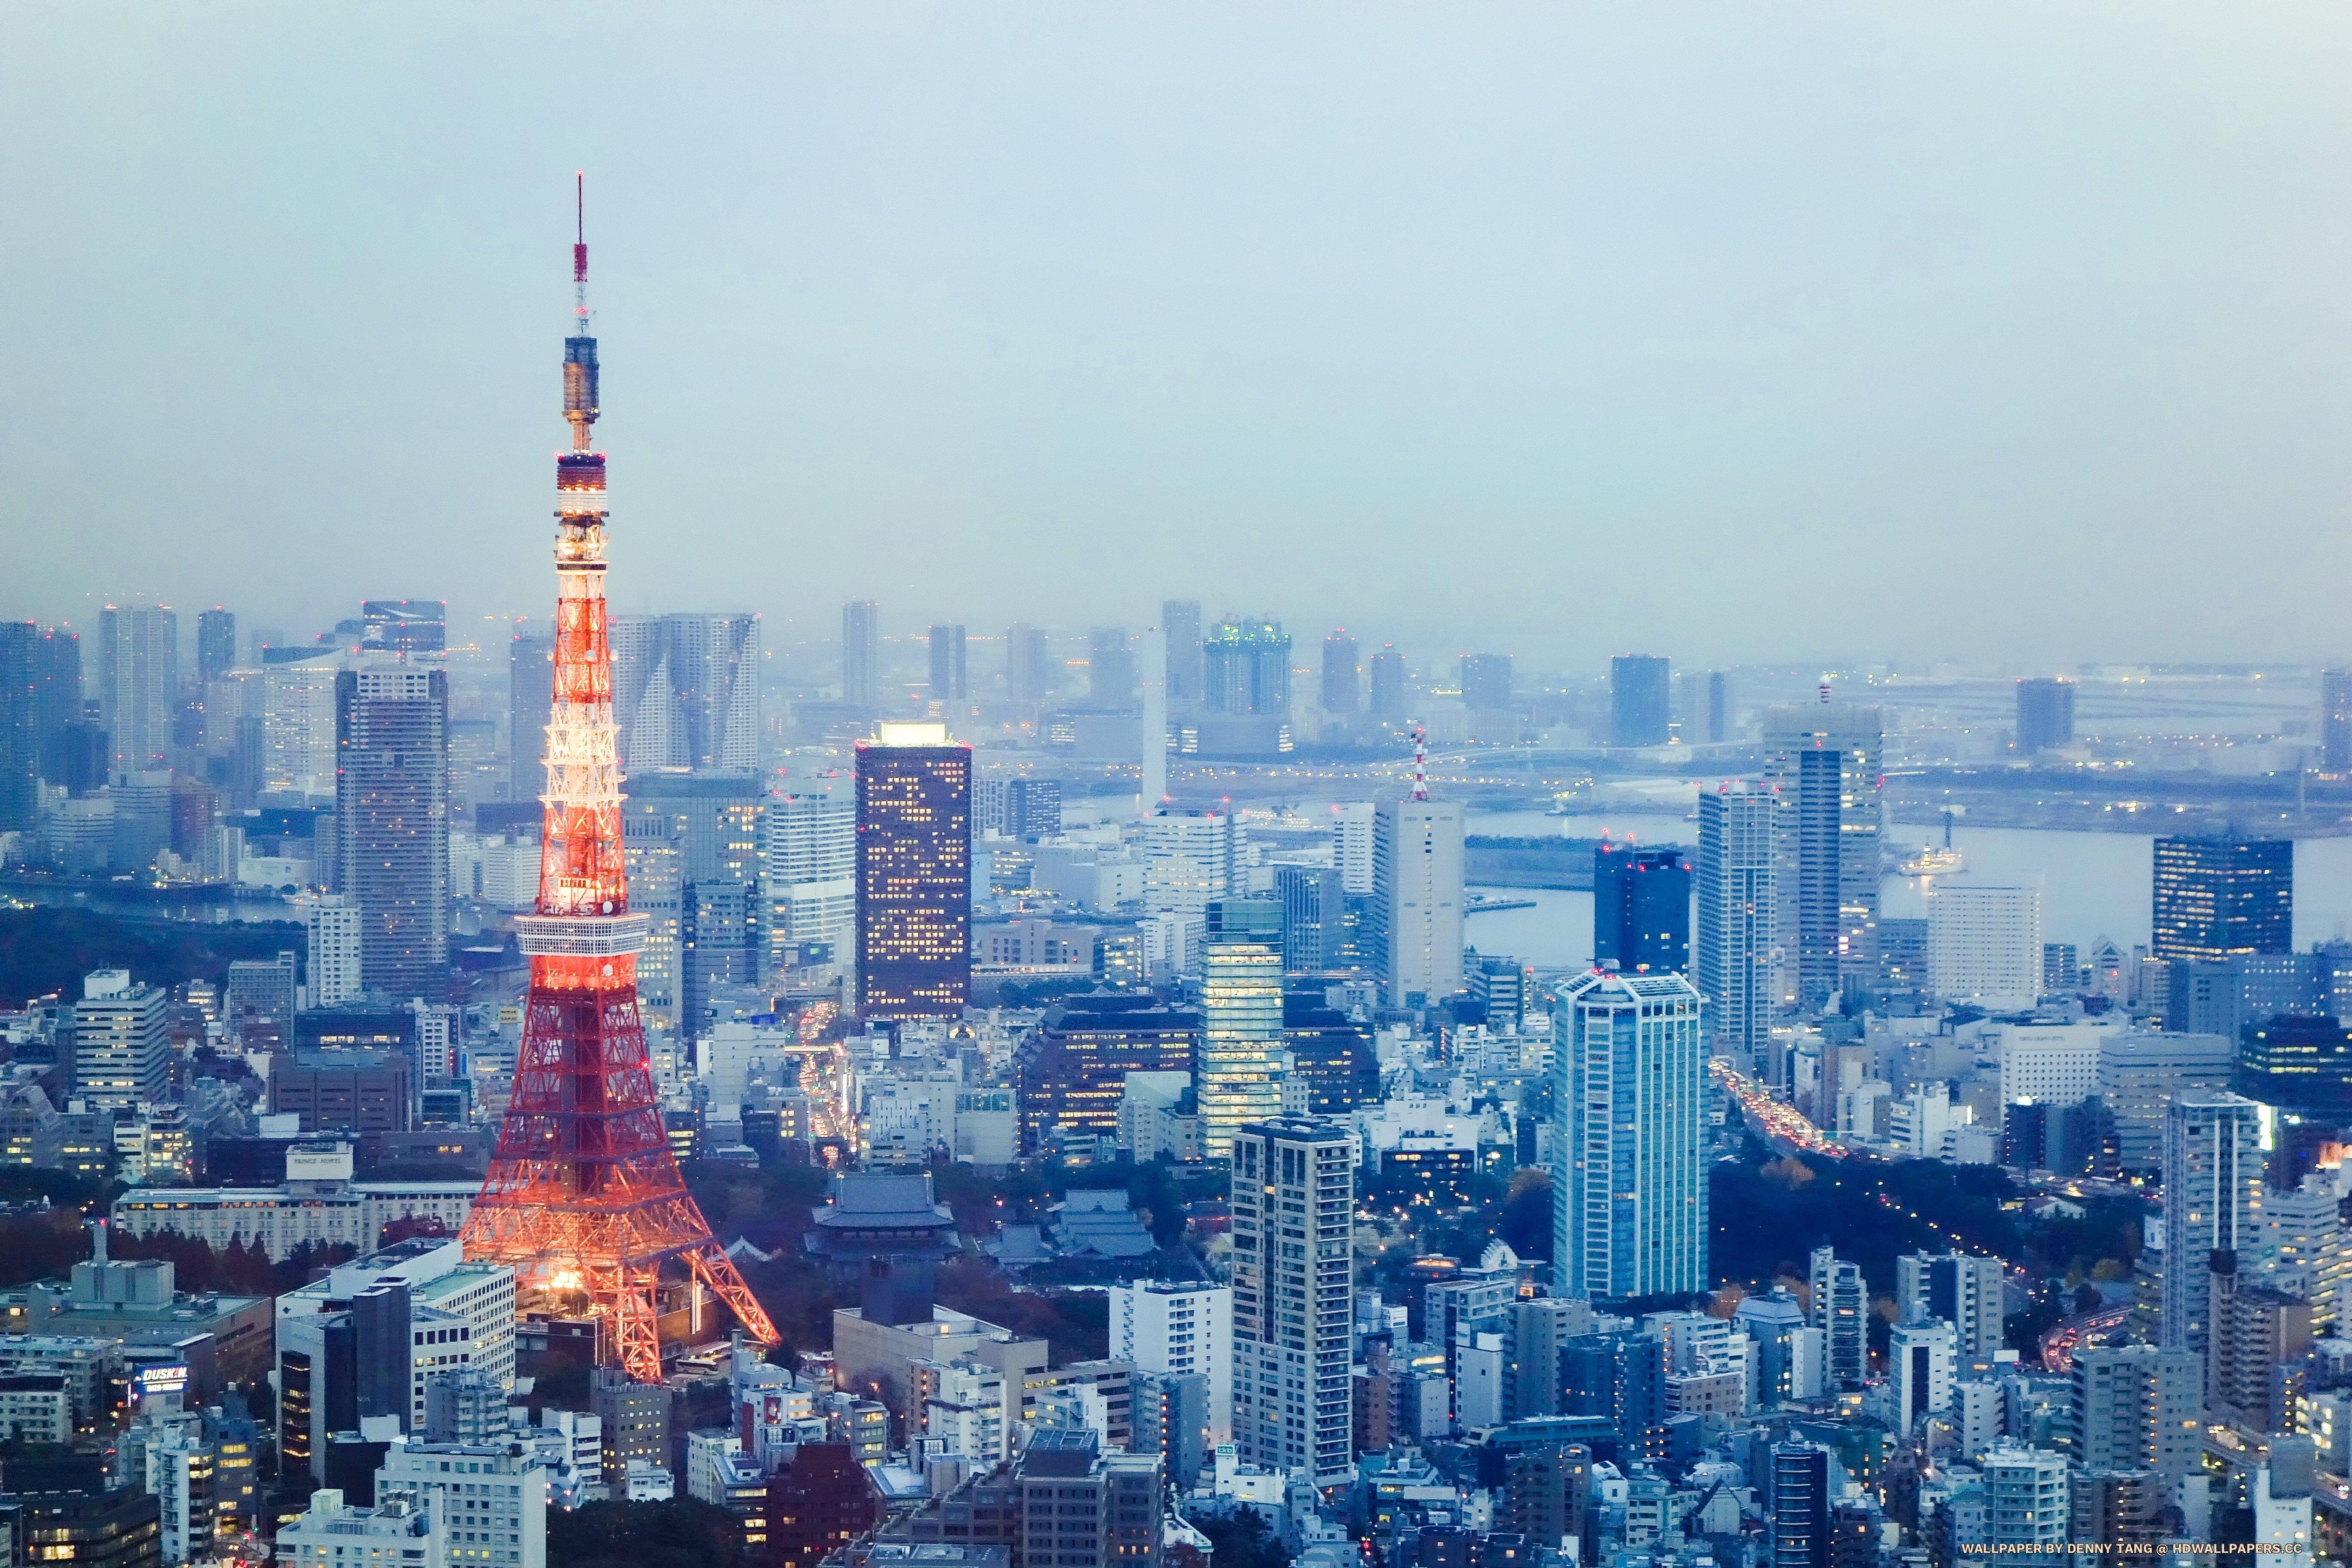 Tokyo 4. Телевизионная башня Токио. Япония Токио телебашня. Токио Тауэр башня. Токийская башня в Японии.